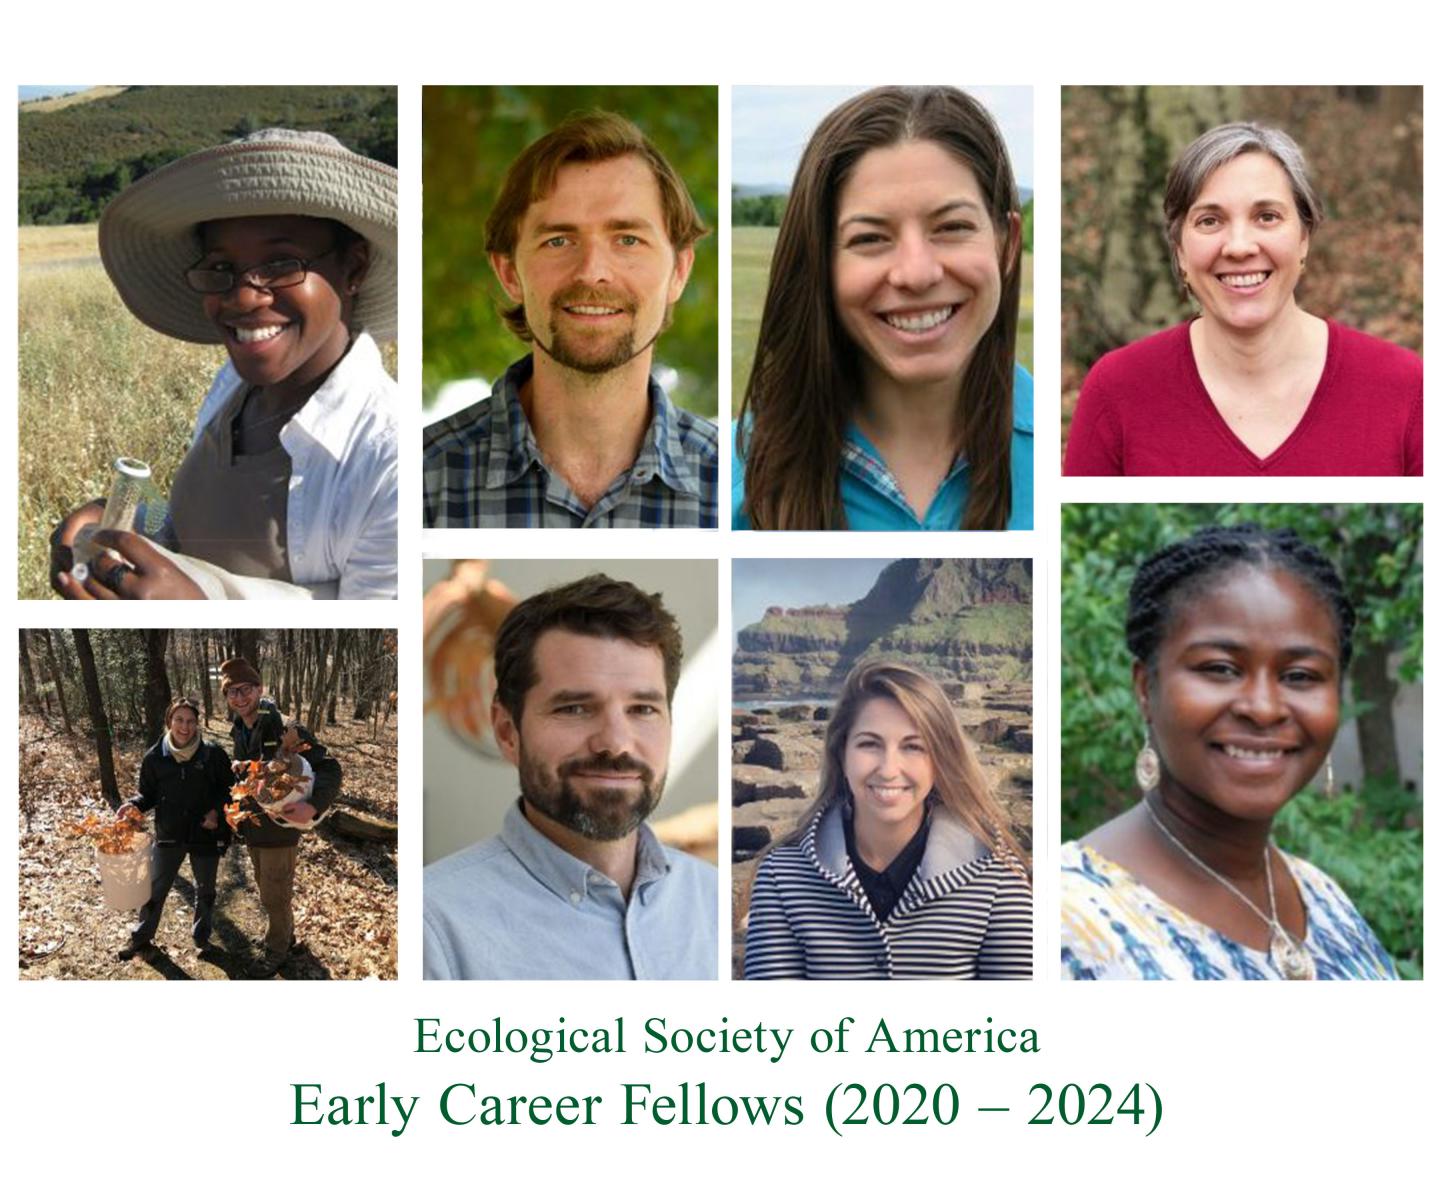 Early Career Fellows (2020 - 2024)